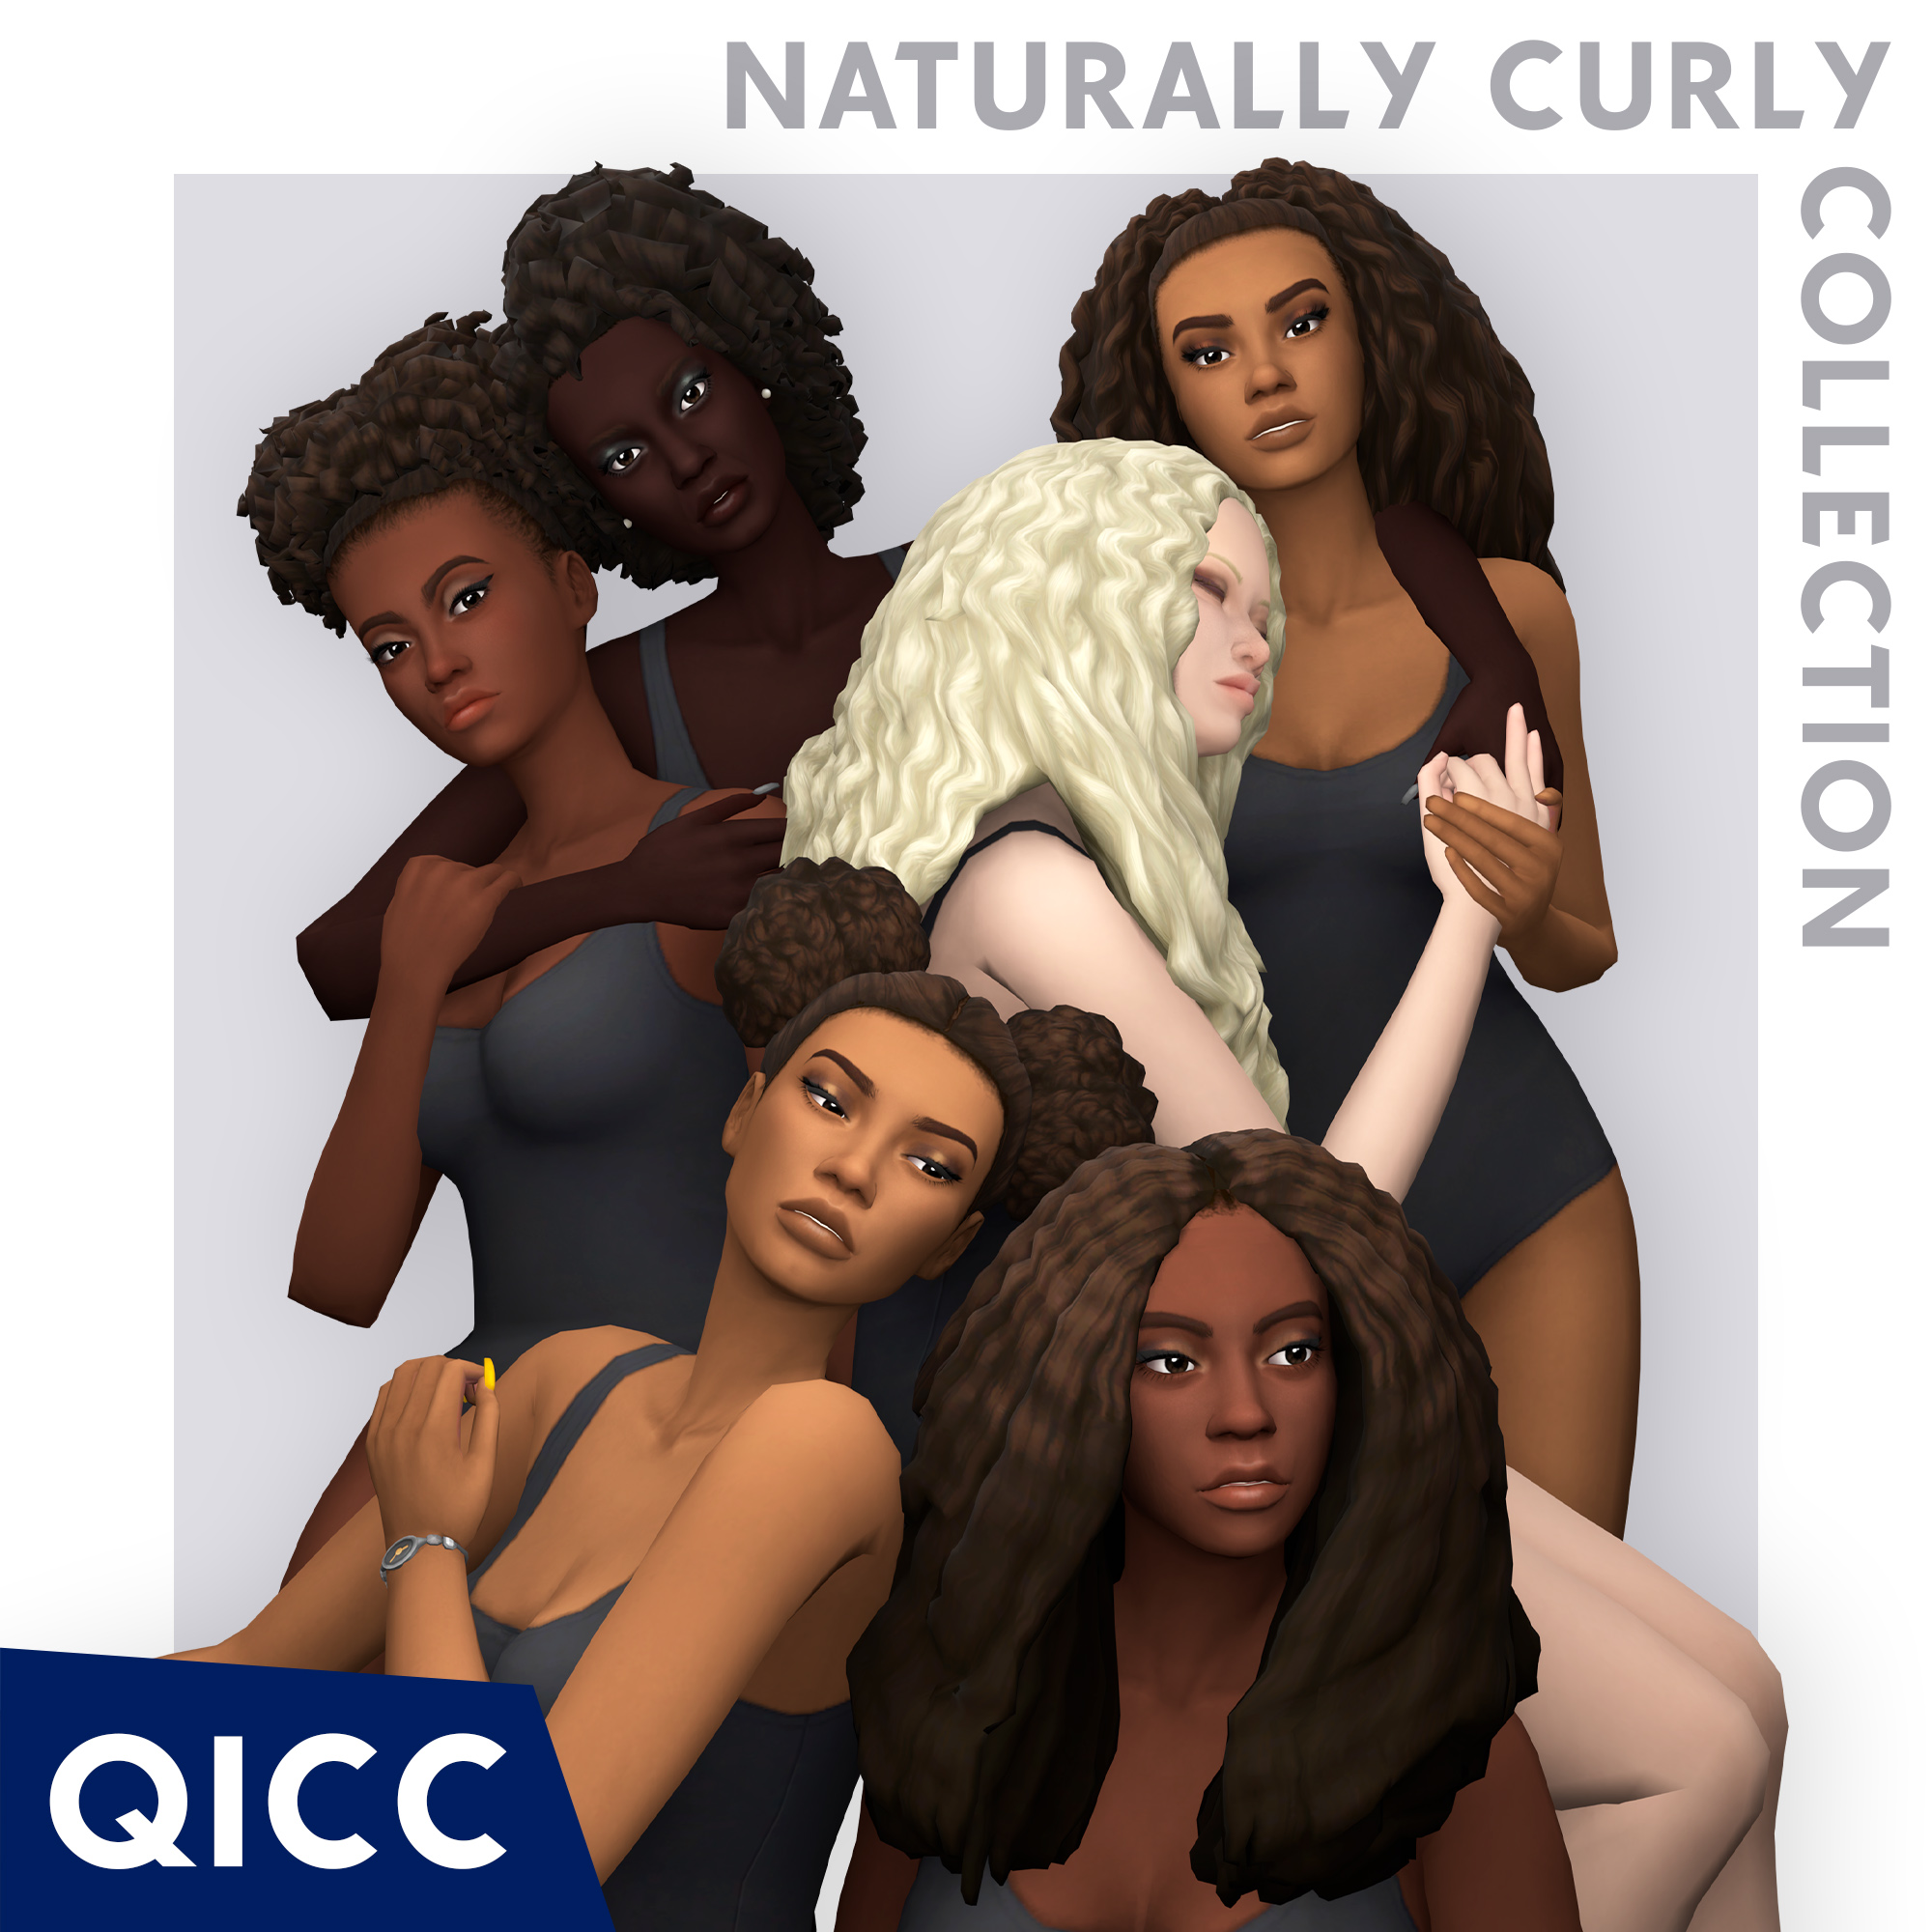 QICC - Jenifer Hair - The Sims 4 Create a Sim - CurseForge